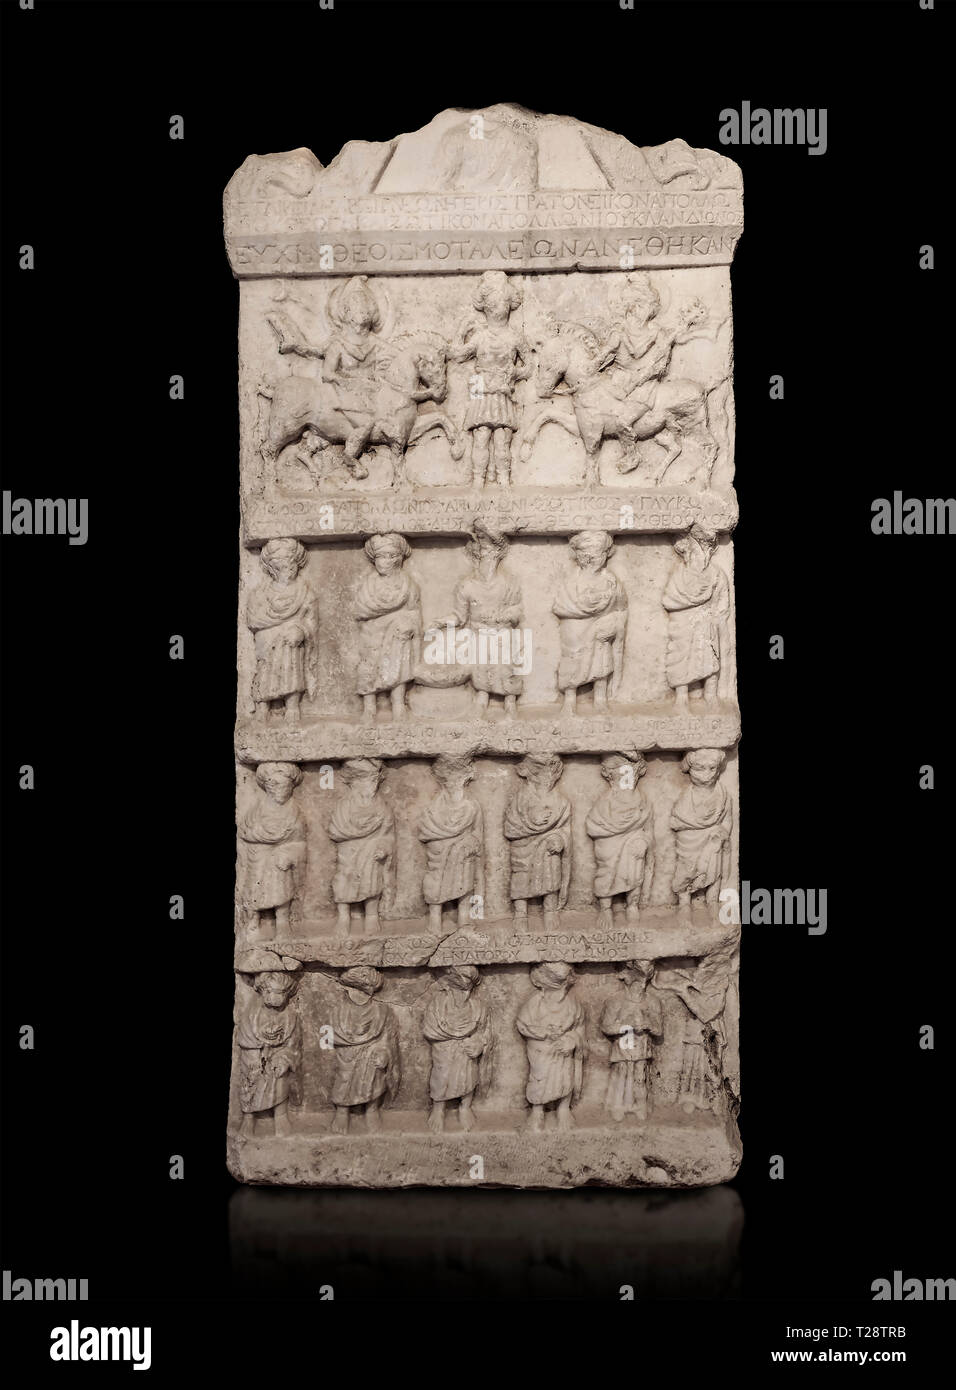 Stèle funéraire sculpture relief romain. Fin de la période romaine. Musée Archéologique de Hierapolis, la Turquie . Contre un fond noir Banque D'Images